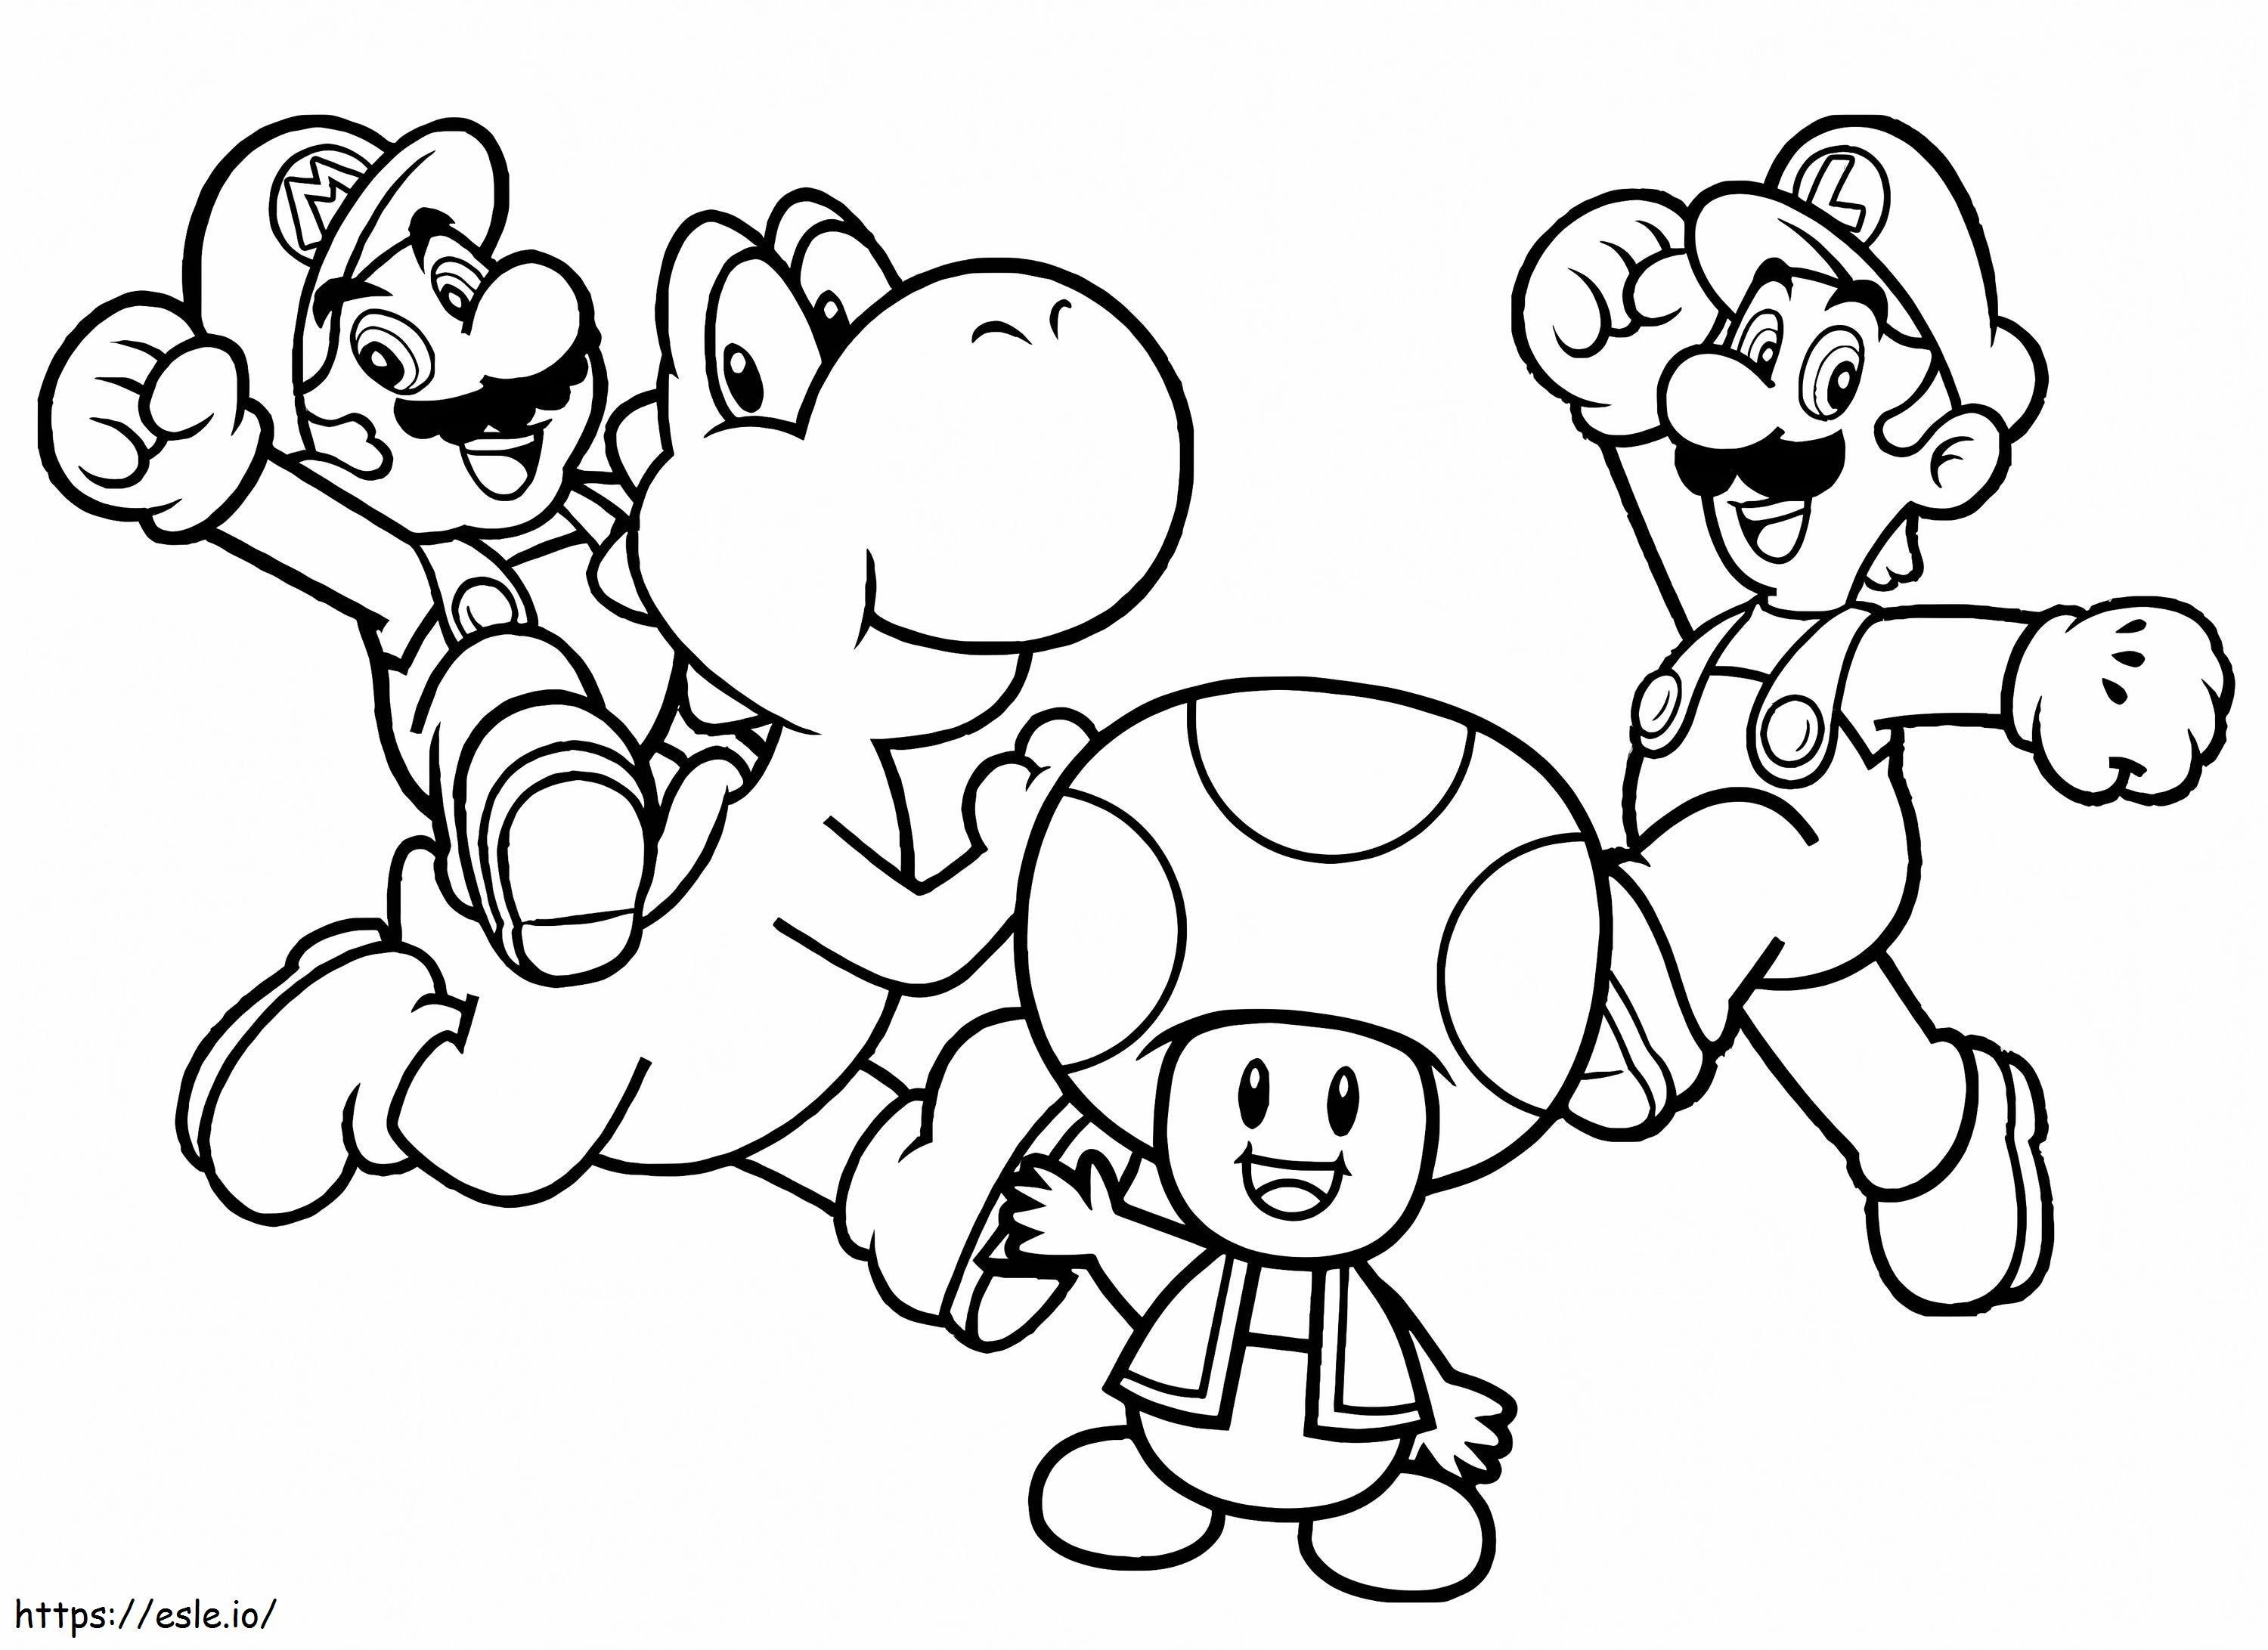 Personagens do Mário para colorir